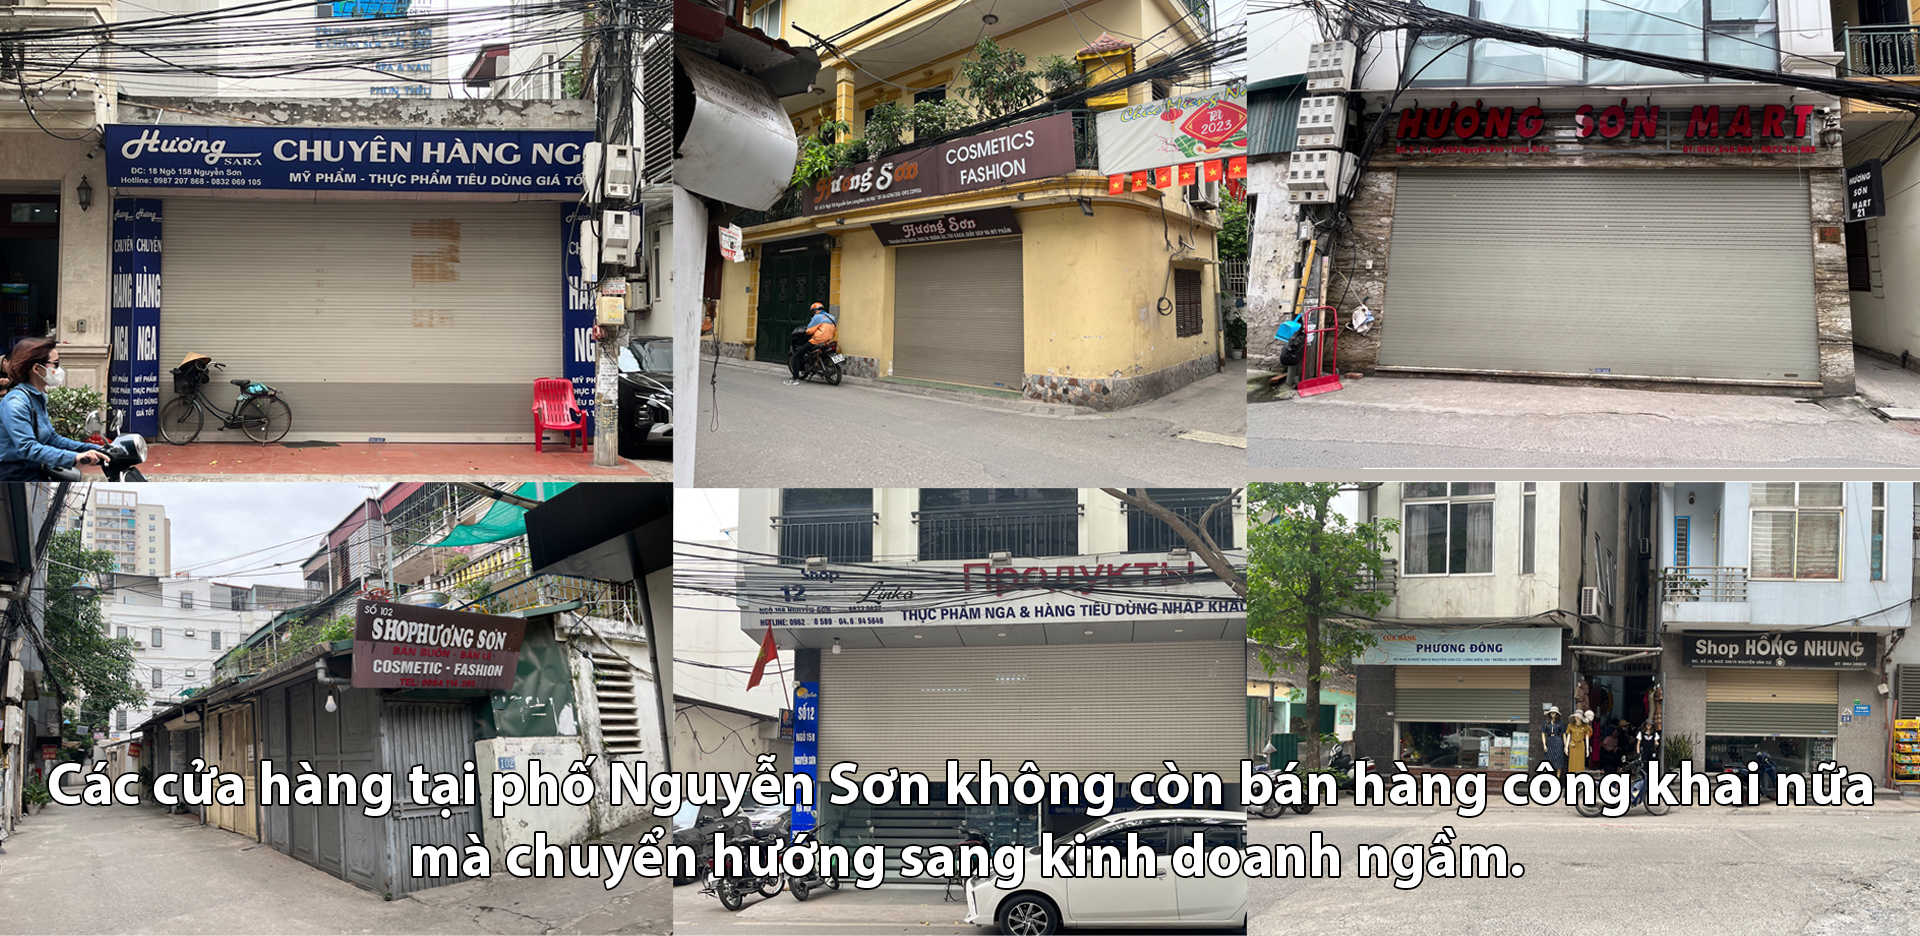 Nhiều dấu hiệu “lạ” trong kinh doanh tại phố Nguyễn Sơn